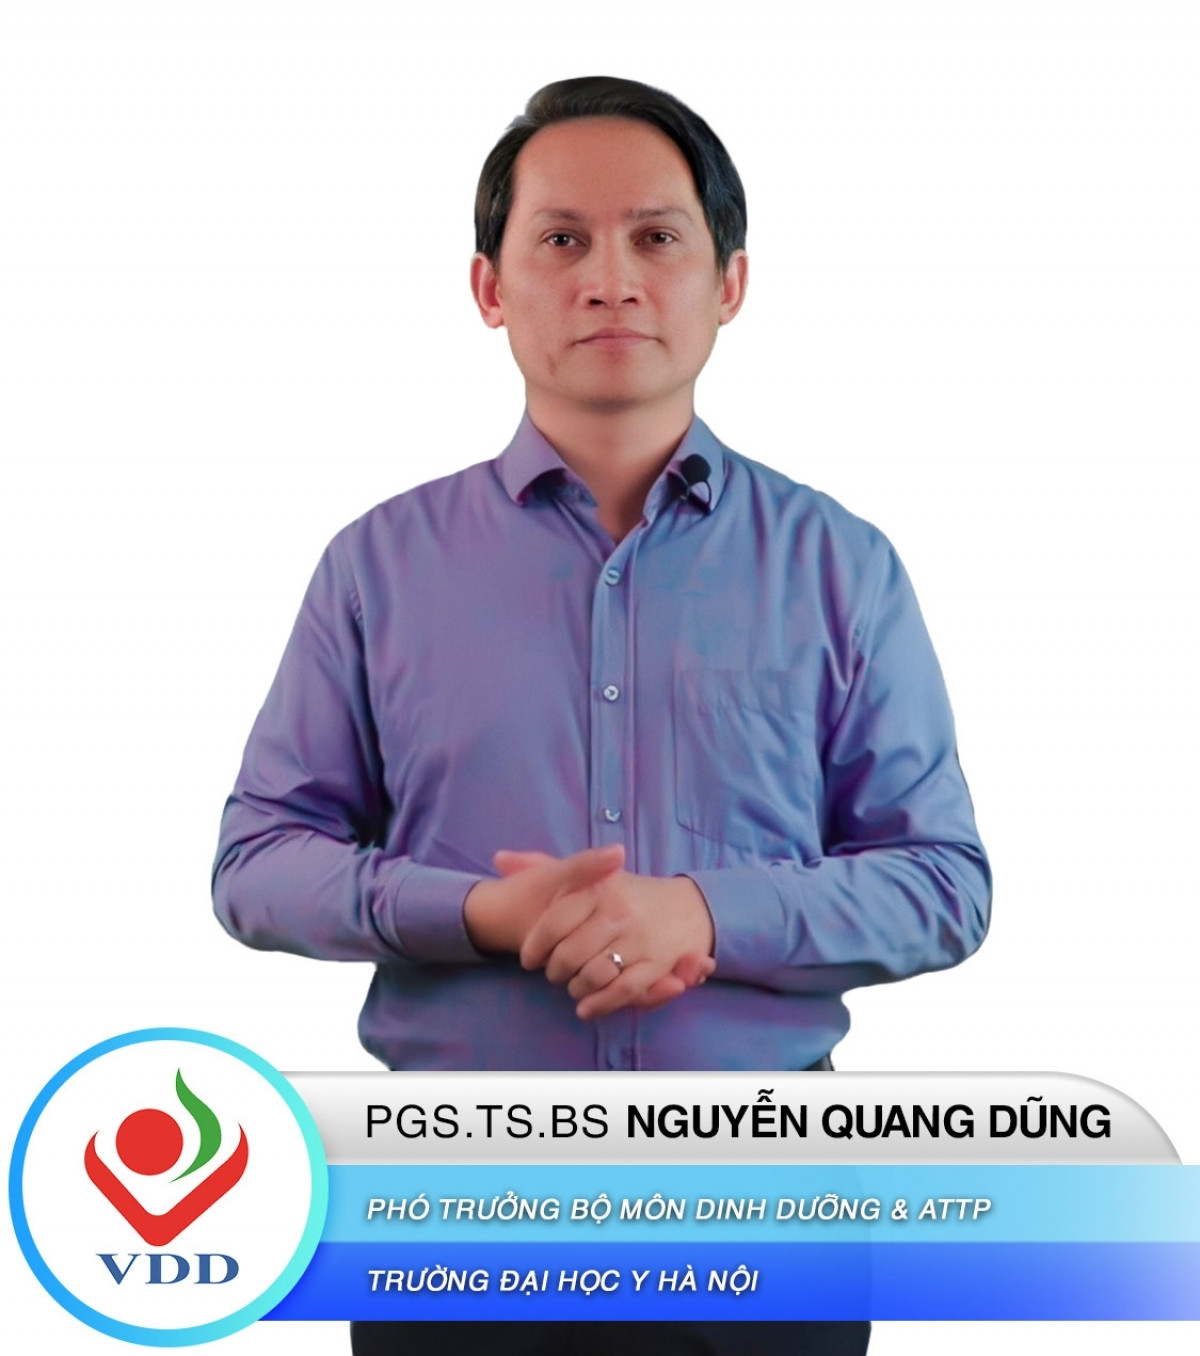 PGS- TS Nguyễn Quang Dũng- Phó trưởng bộ môn Dinh dưỡng và an toàn thực phẩm- ĐH Y Hà Nội.